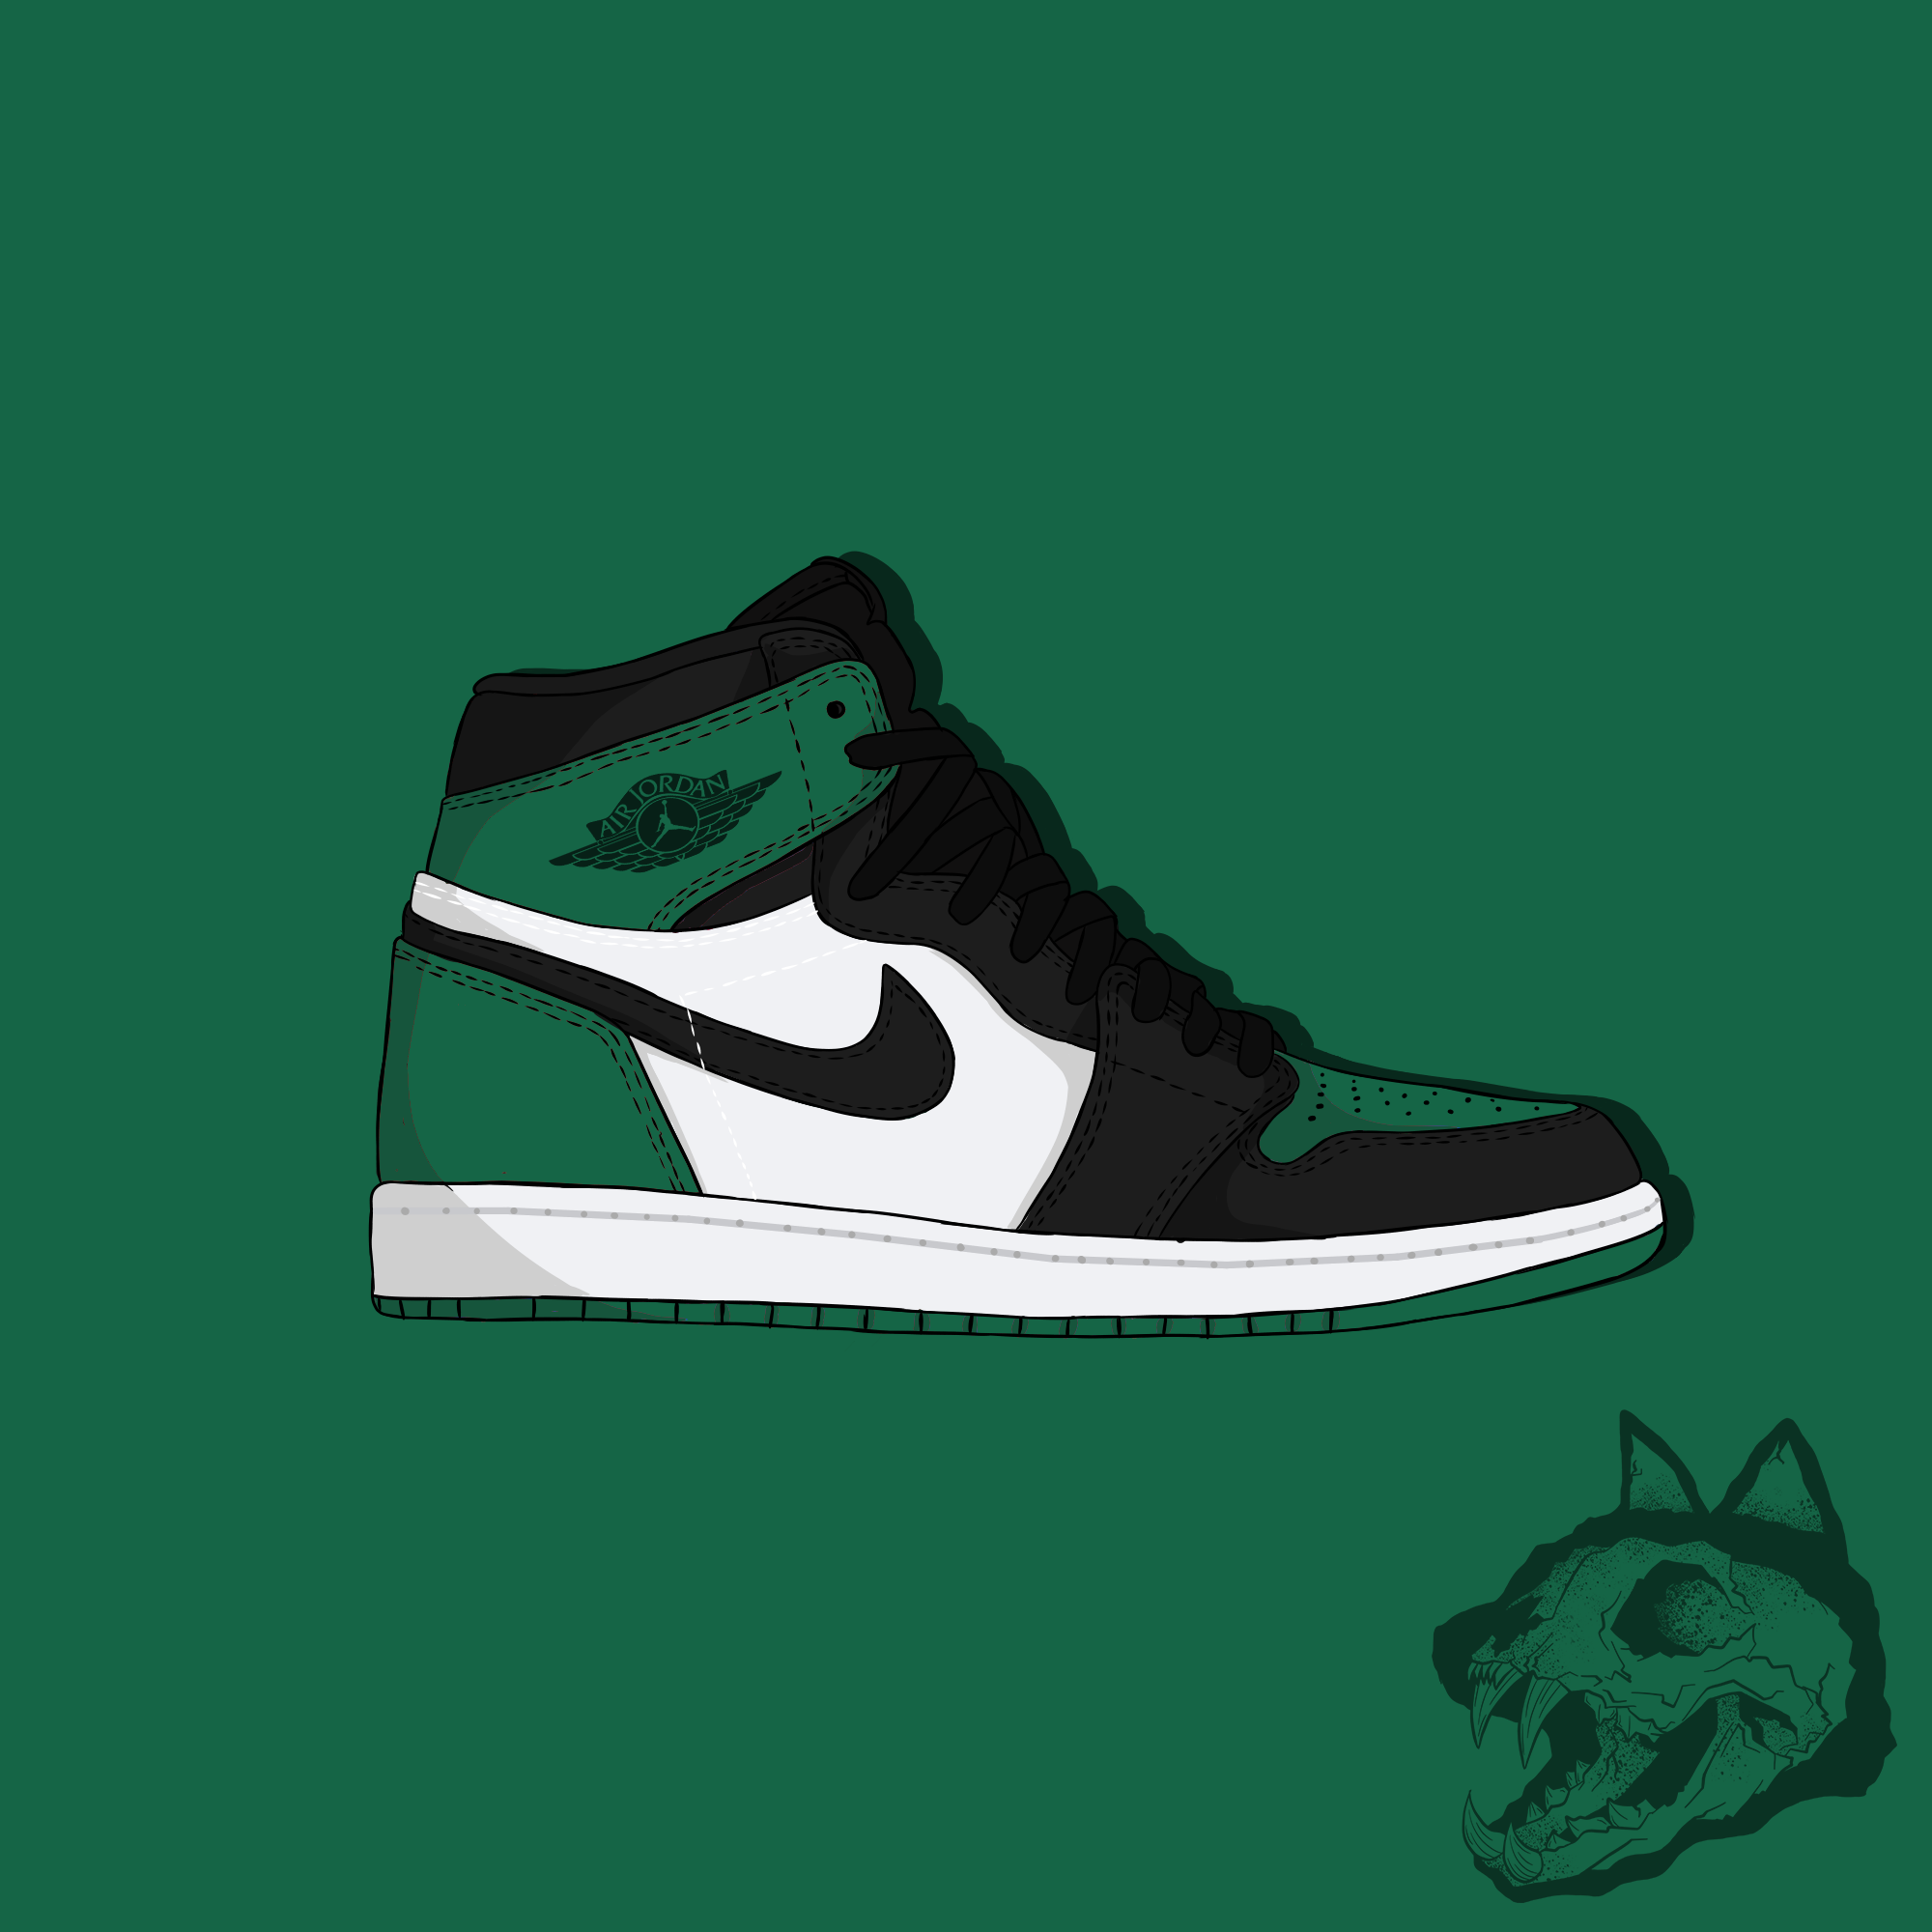 Jordan 1 pine green. Sneaker art, Jordan 1 pine green, Sneakers